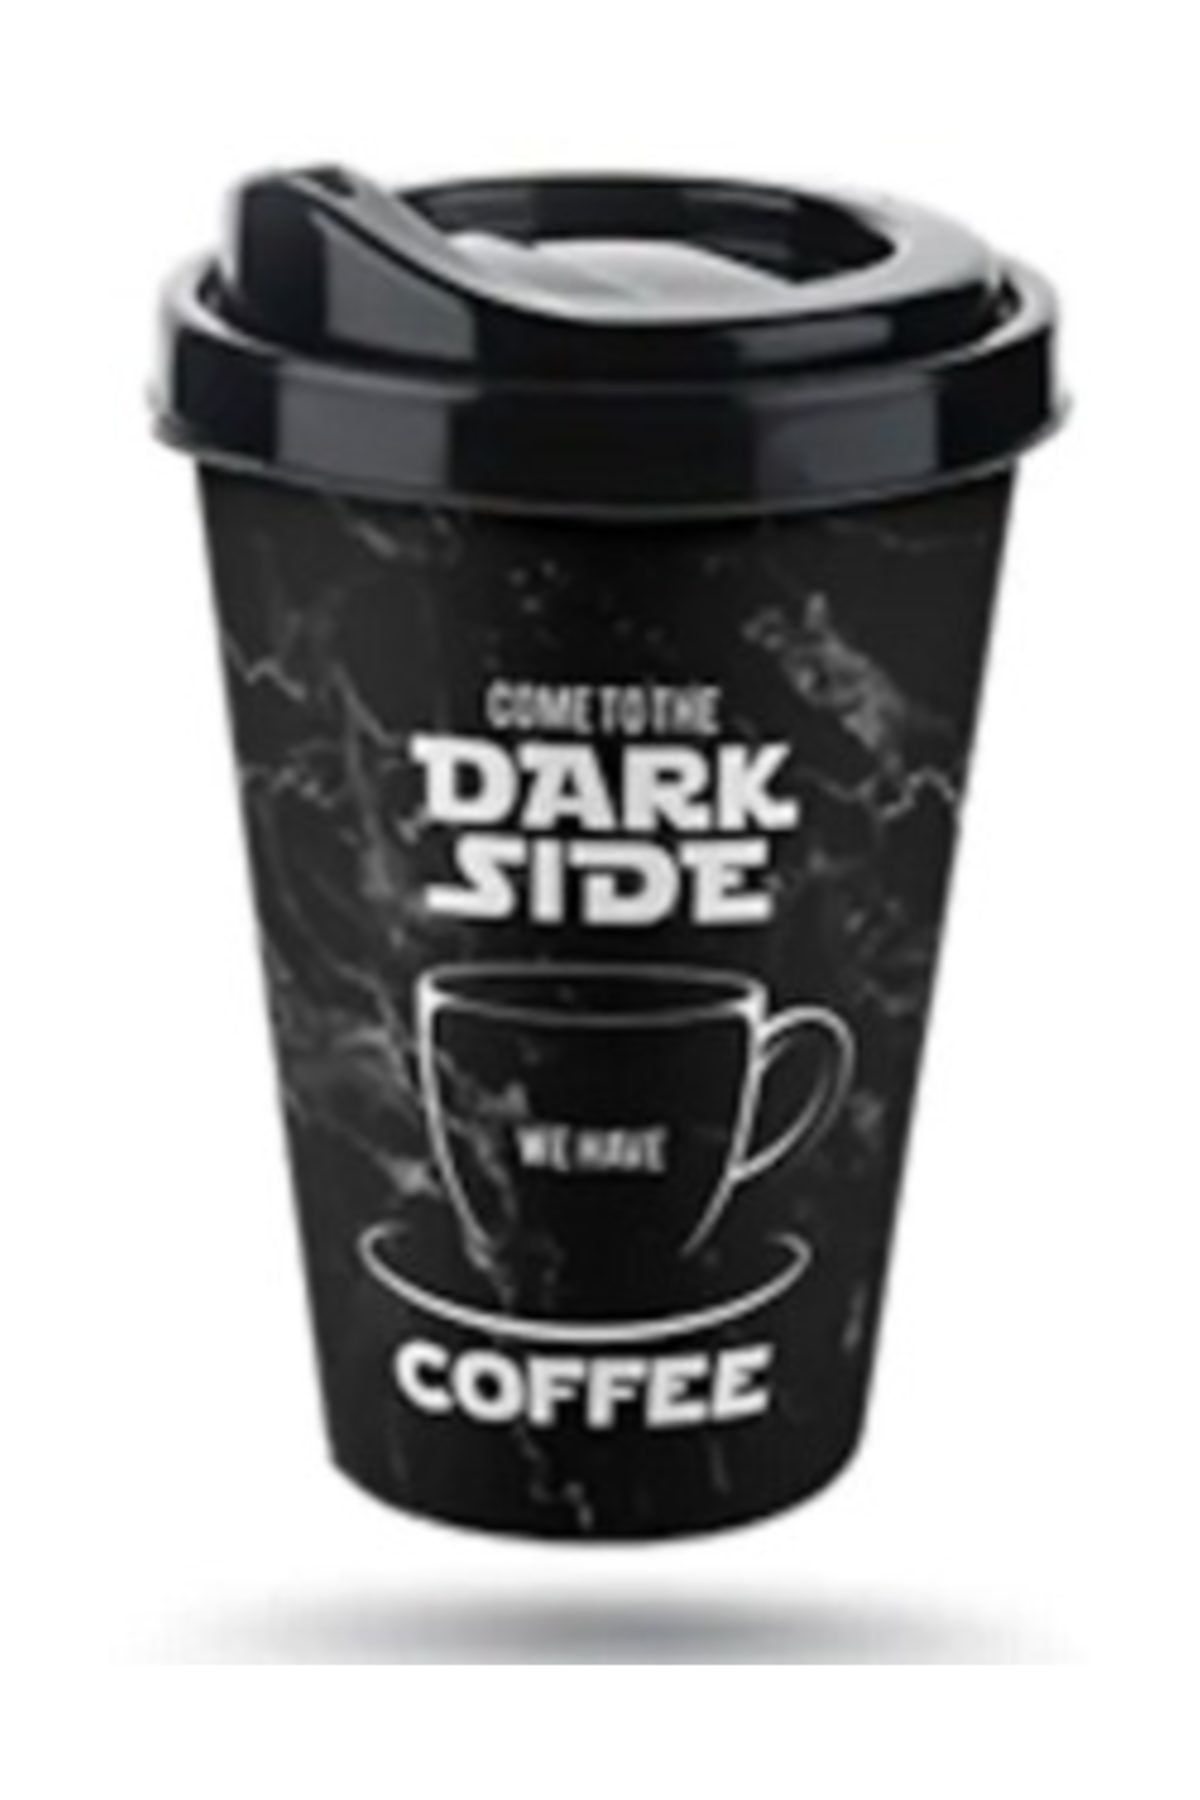 Titiz Ihtiyaçlimanı  Coffe Plastik Bardak 400 Ml (dark Side), Kahve Çay Bardağı